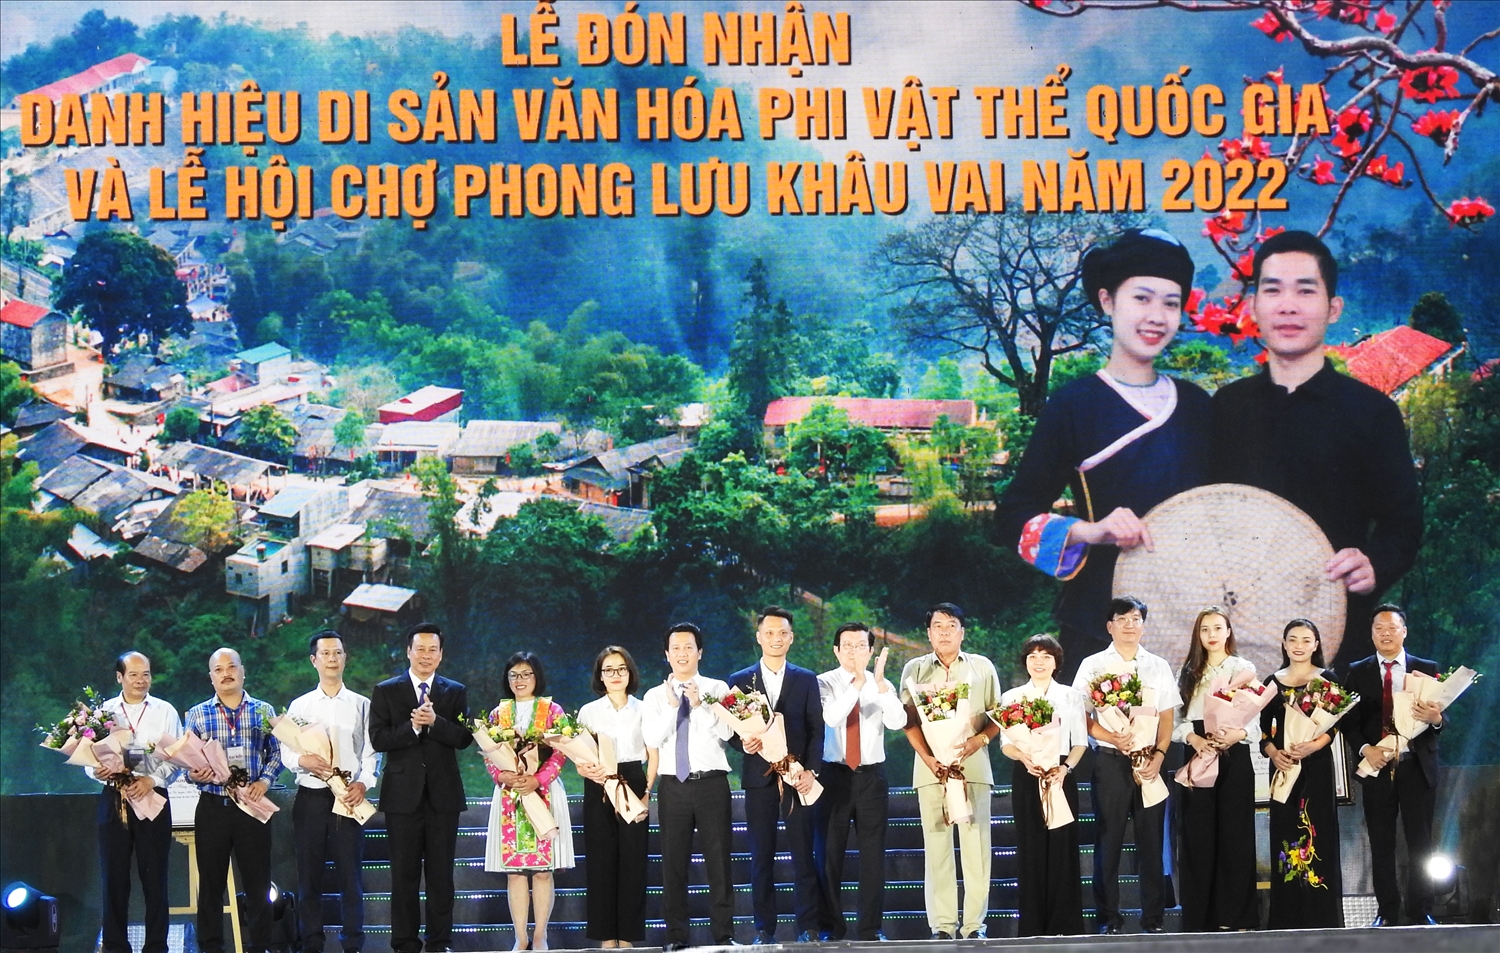 Nguyên Ủy viên Bộ Chính trị, Nguyên Chủ tịch nước Cộng hòa Xã hội Chủ nghĩa Việt Nam Trương Tấn Sang và Bí thư Tỉnh uỷ Hà Giang Đặng Quốc Khánh tặng hoa cho các doanh nghiệp, cá nhân tài trợ